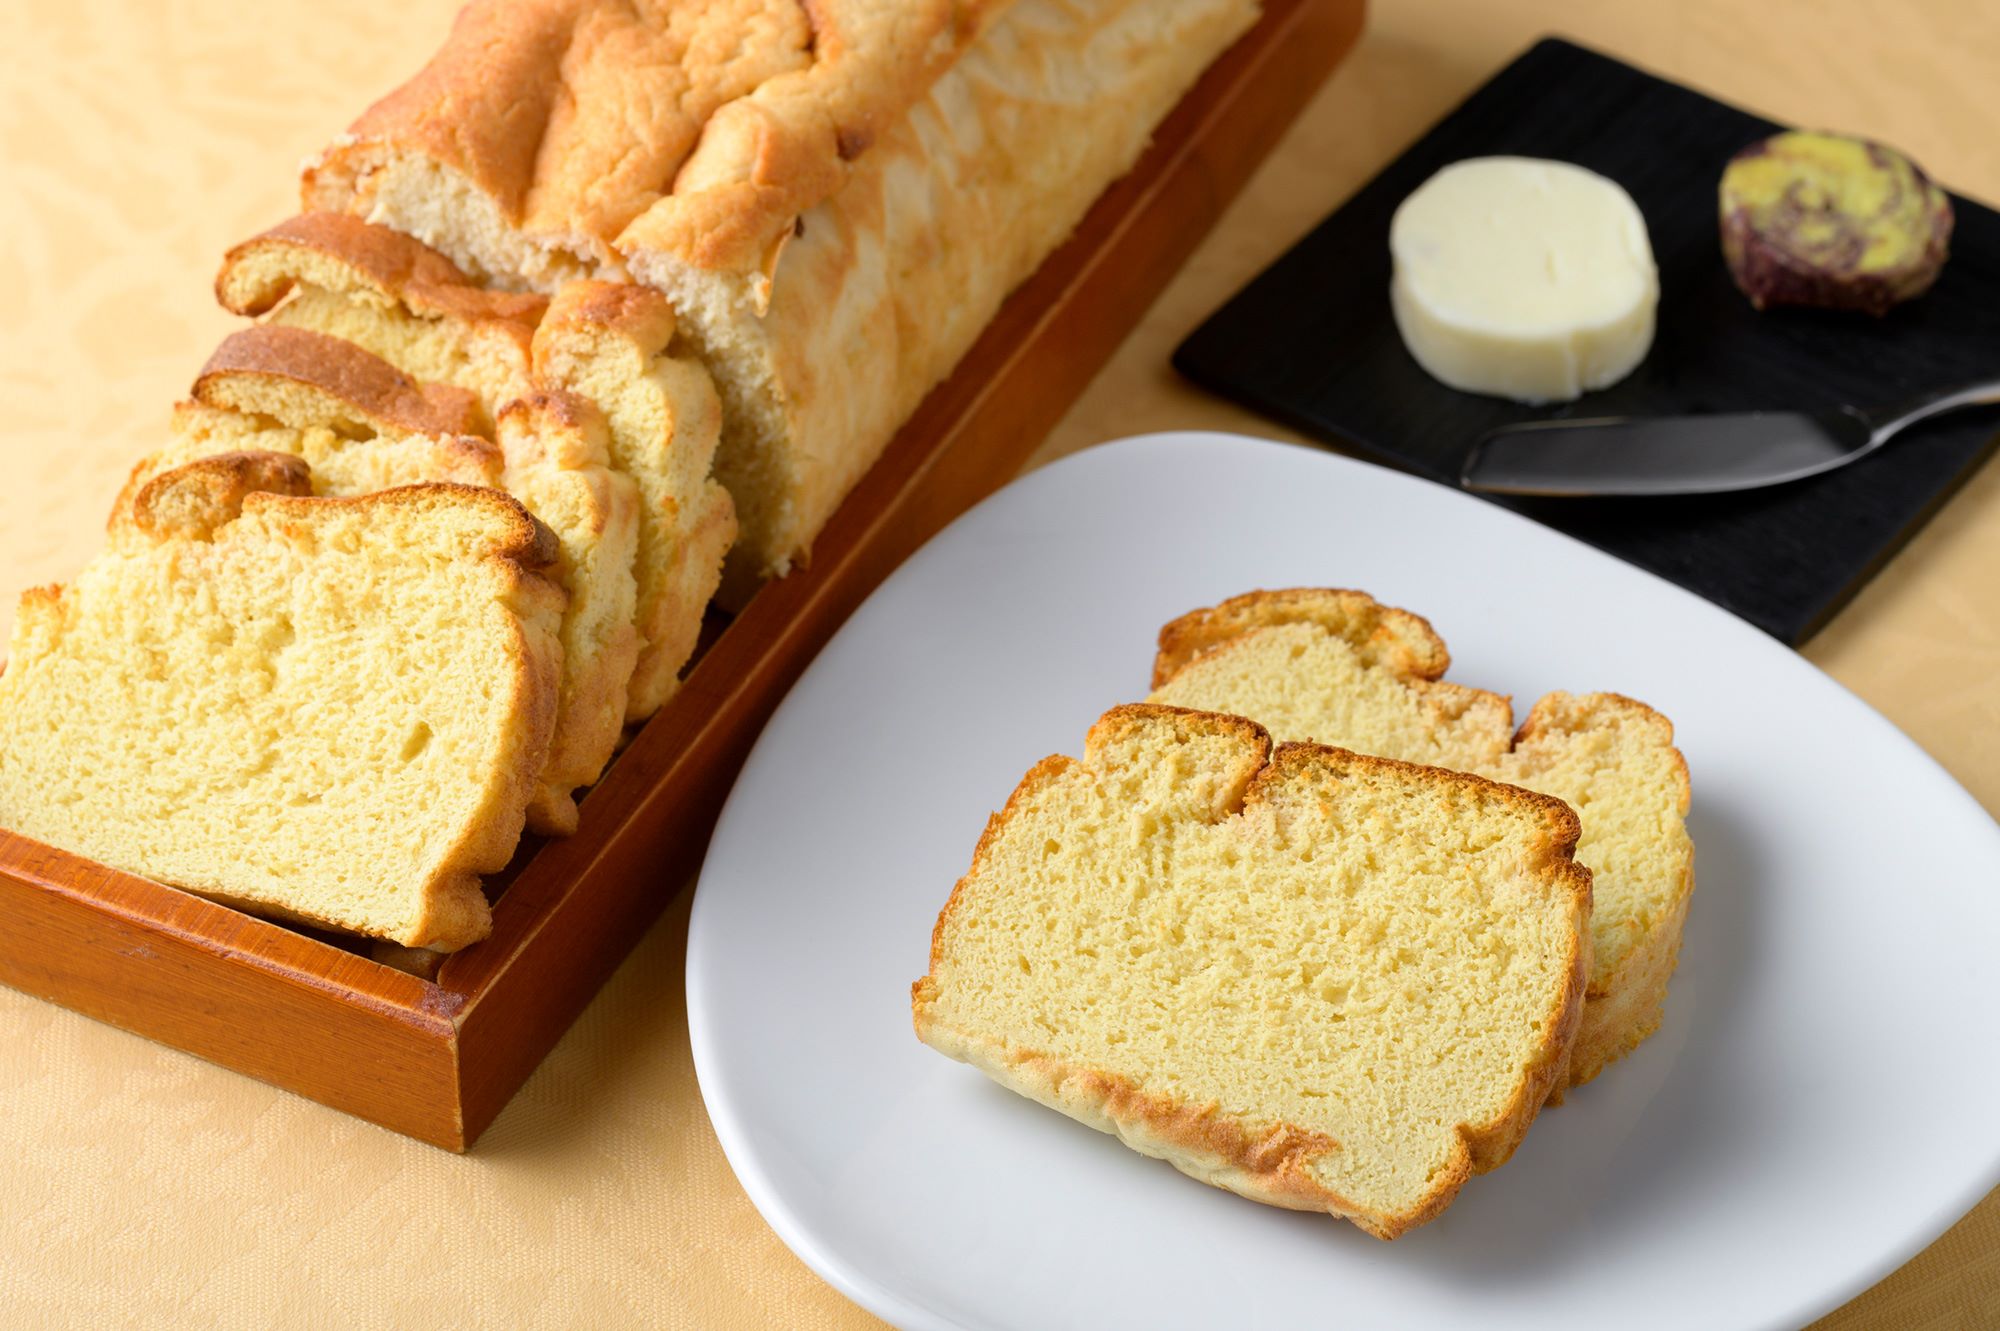 おからを使った食物繊維たっぷりのパンはグルテンフリーで低糖質。